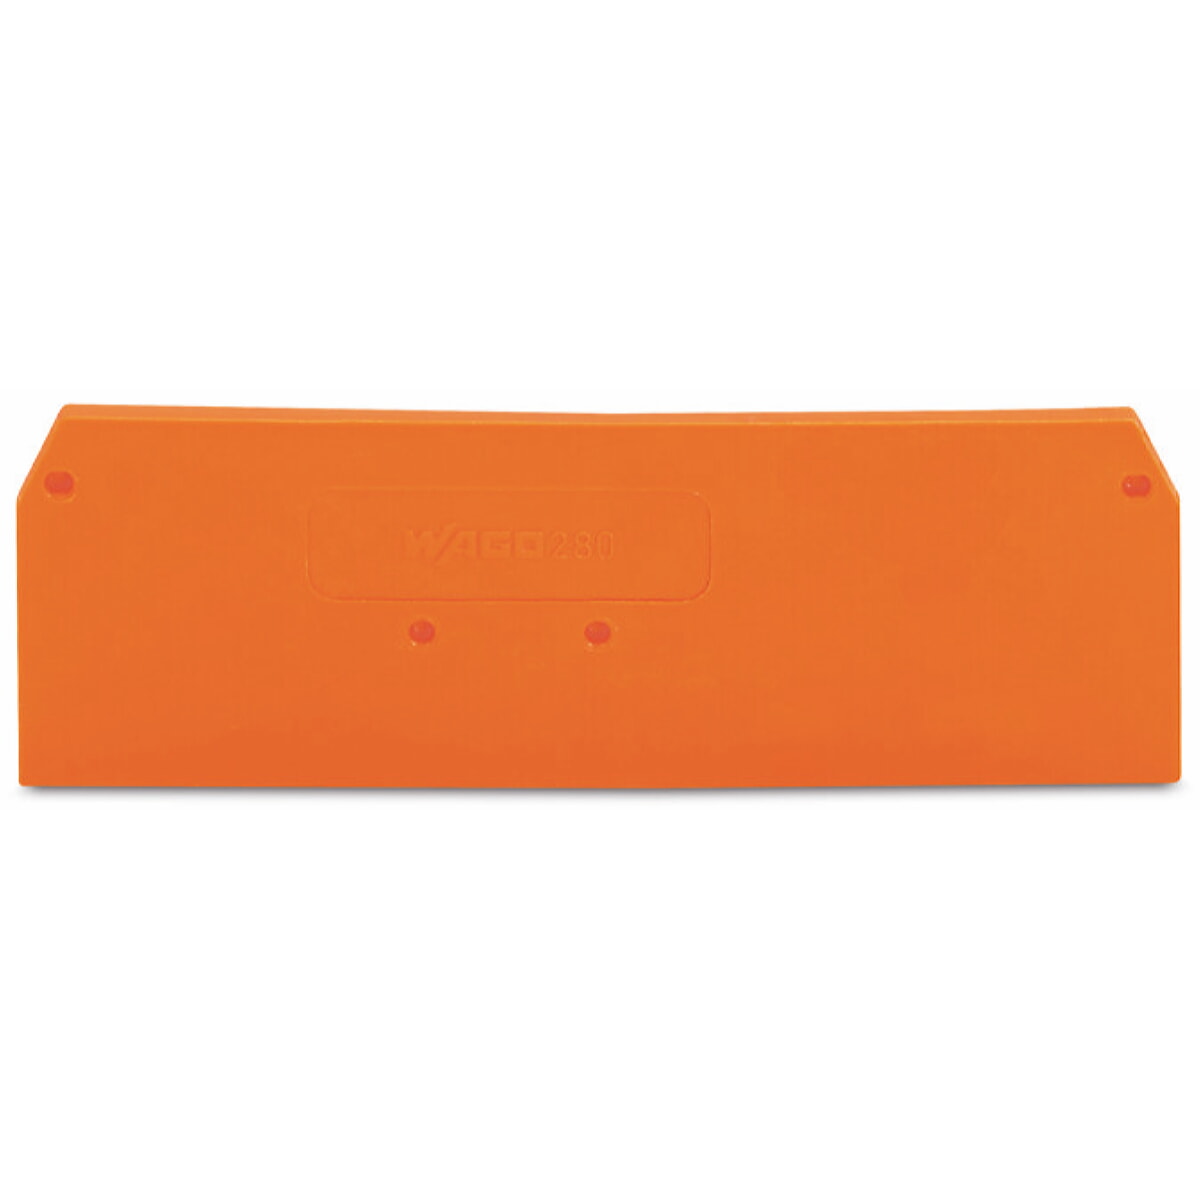 WAGO Abschlussplatte u. Zwischenplatte 280-315 orange